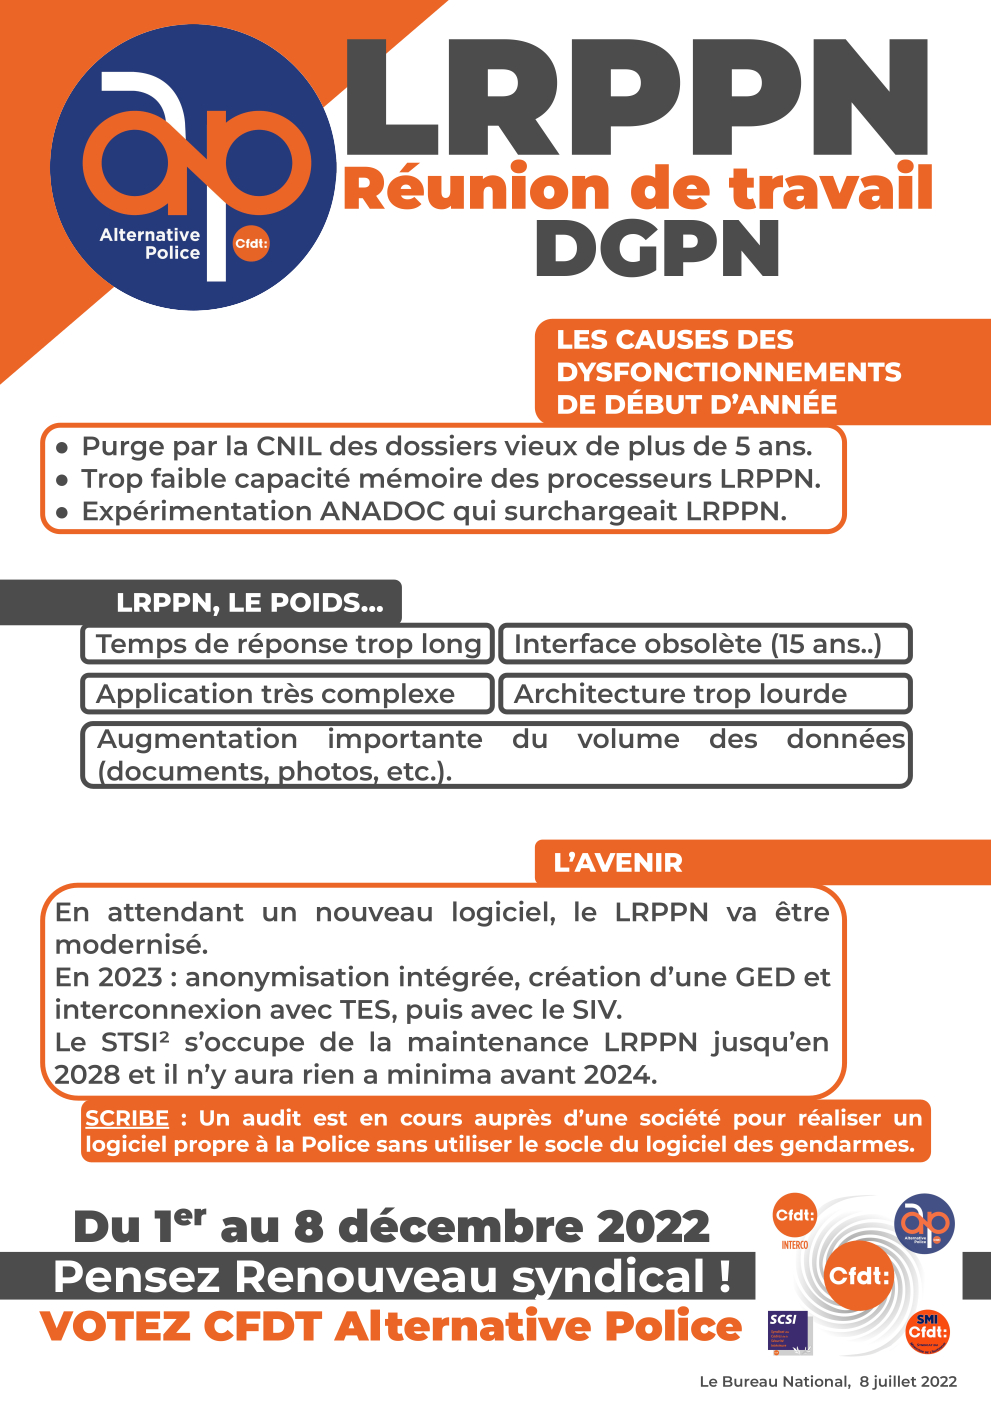 LRPPN : réunion de travail DGPN